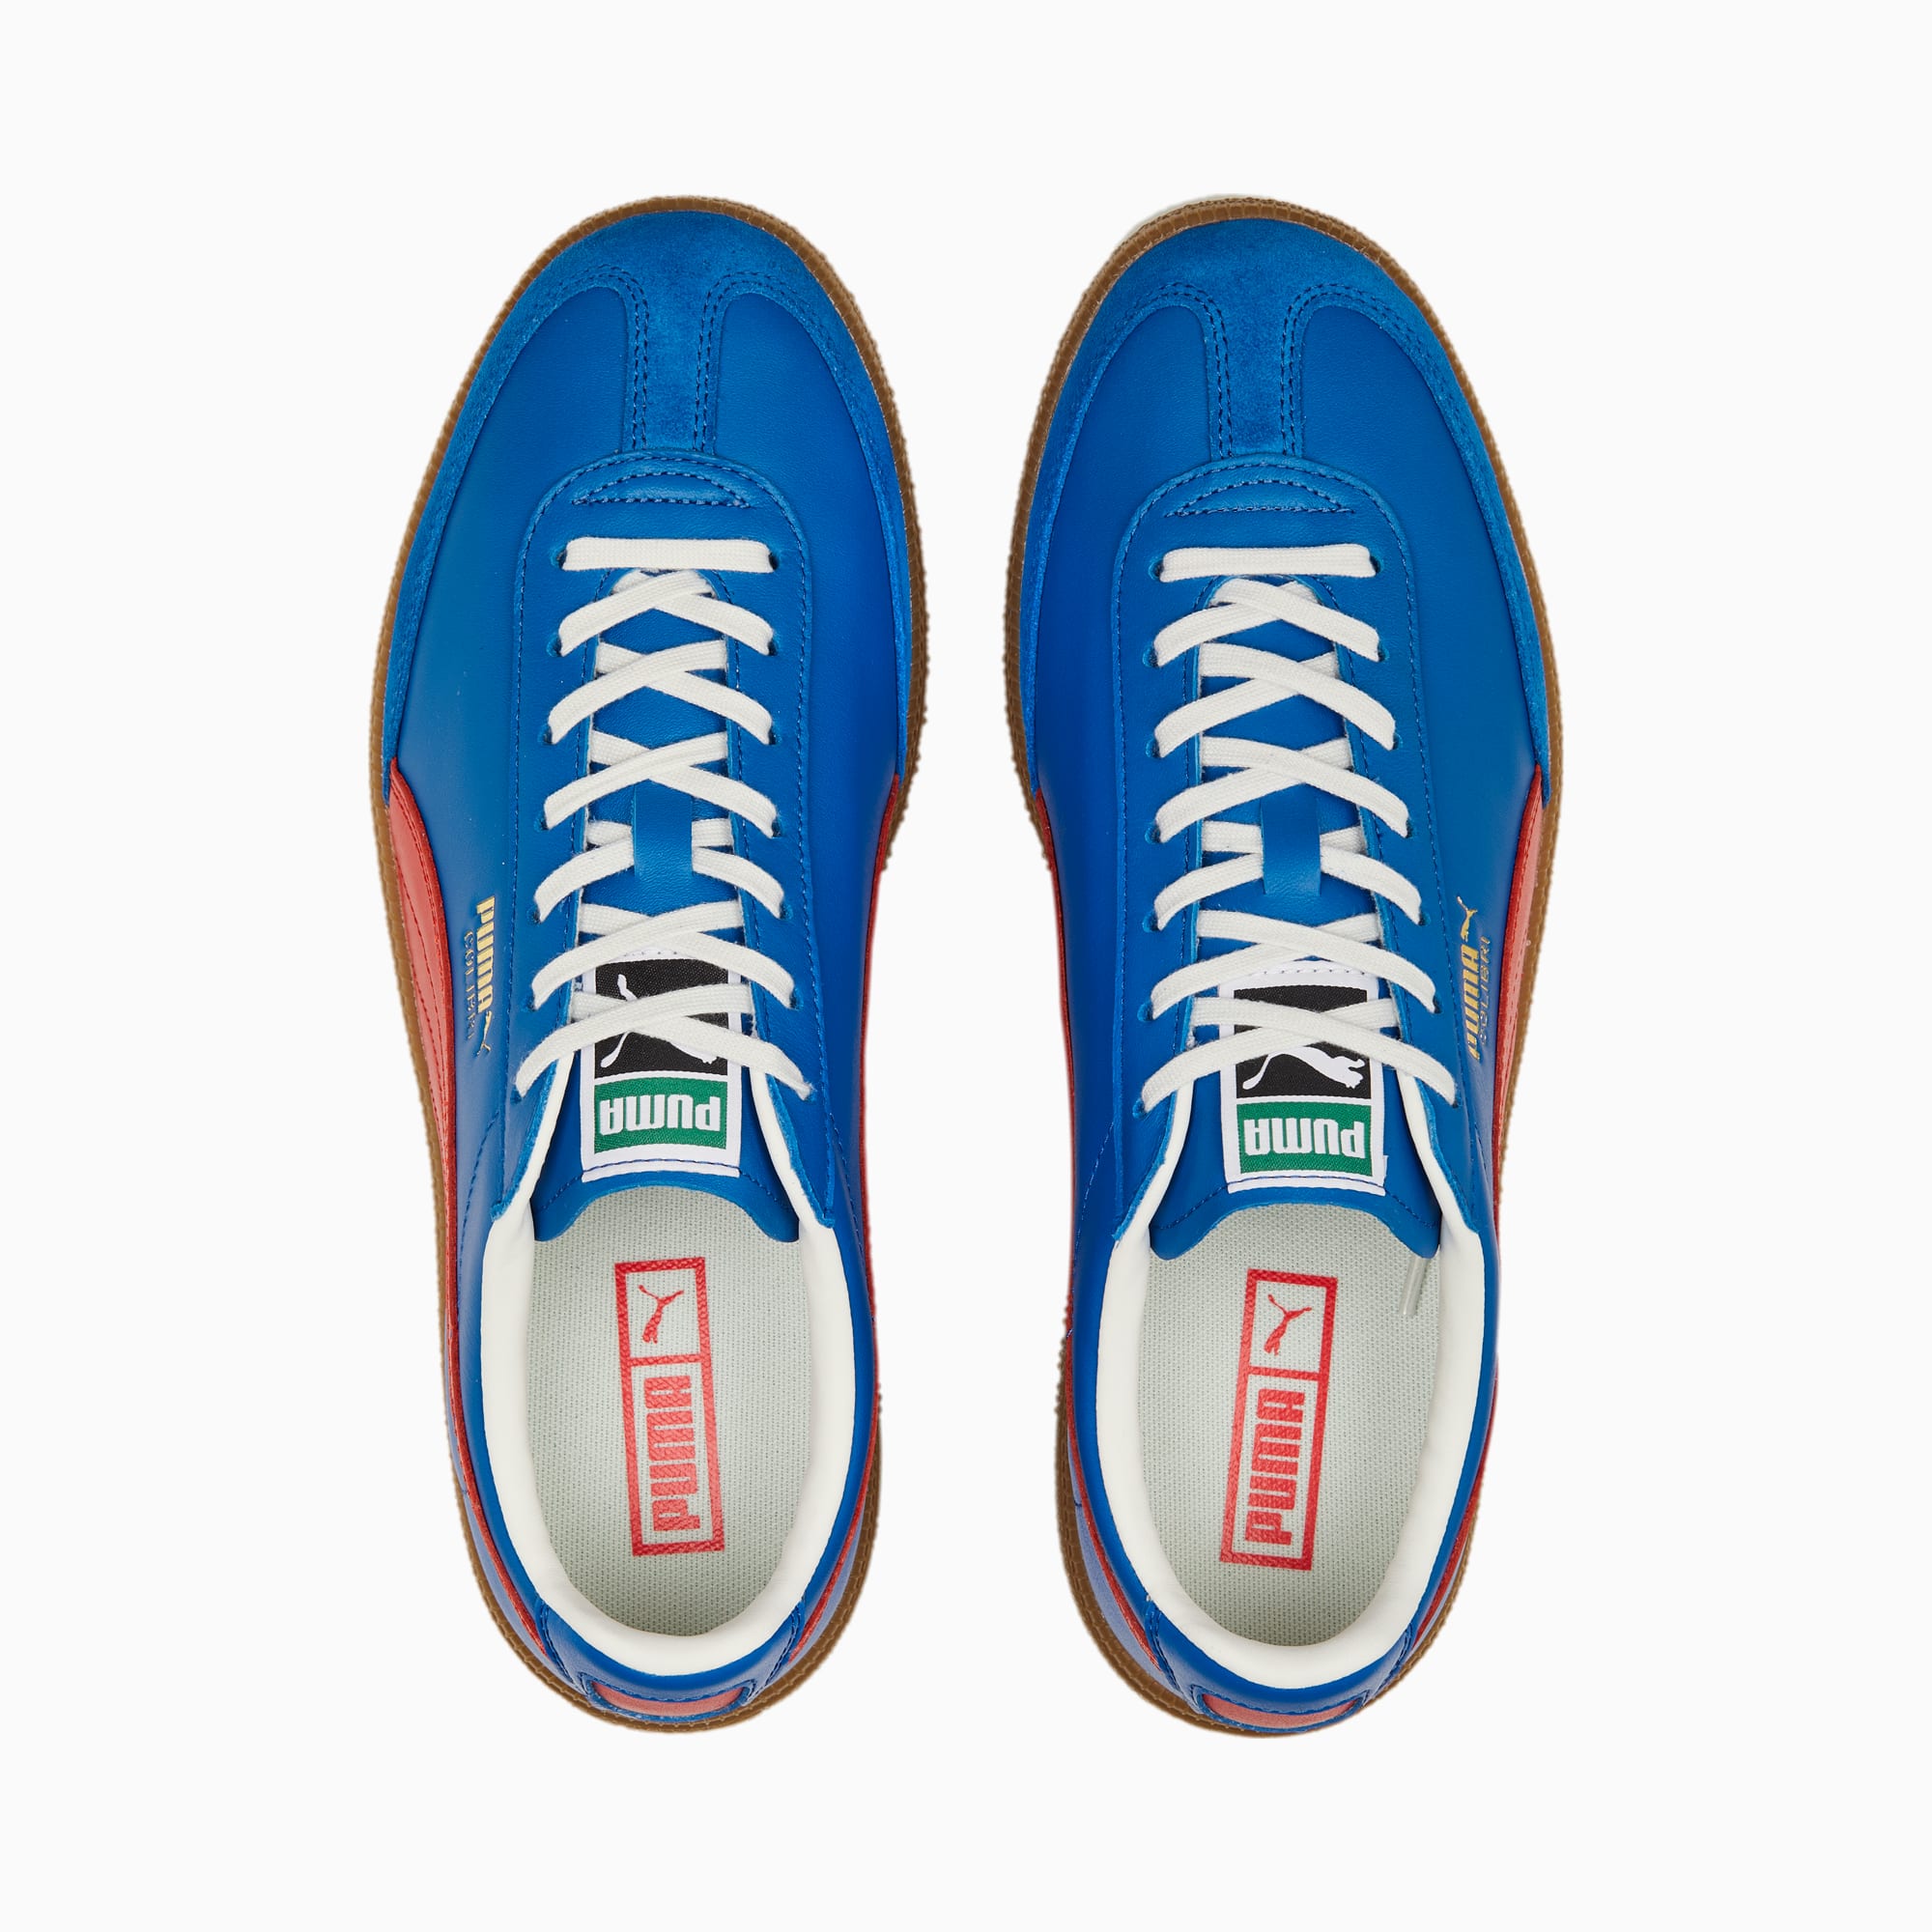 PUMA Colibri OG Sneakers Schuhe, Blau/Rot, Größe: 40.5, Schuhe